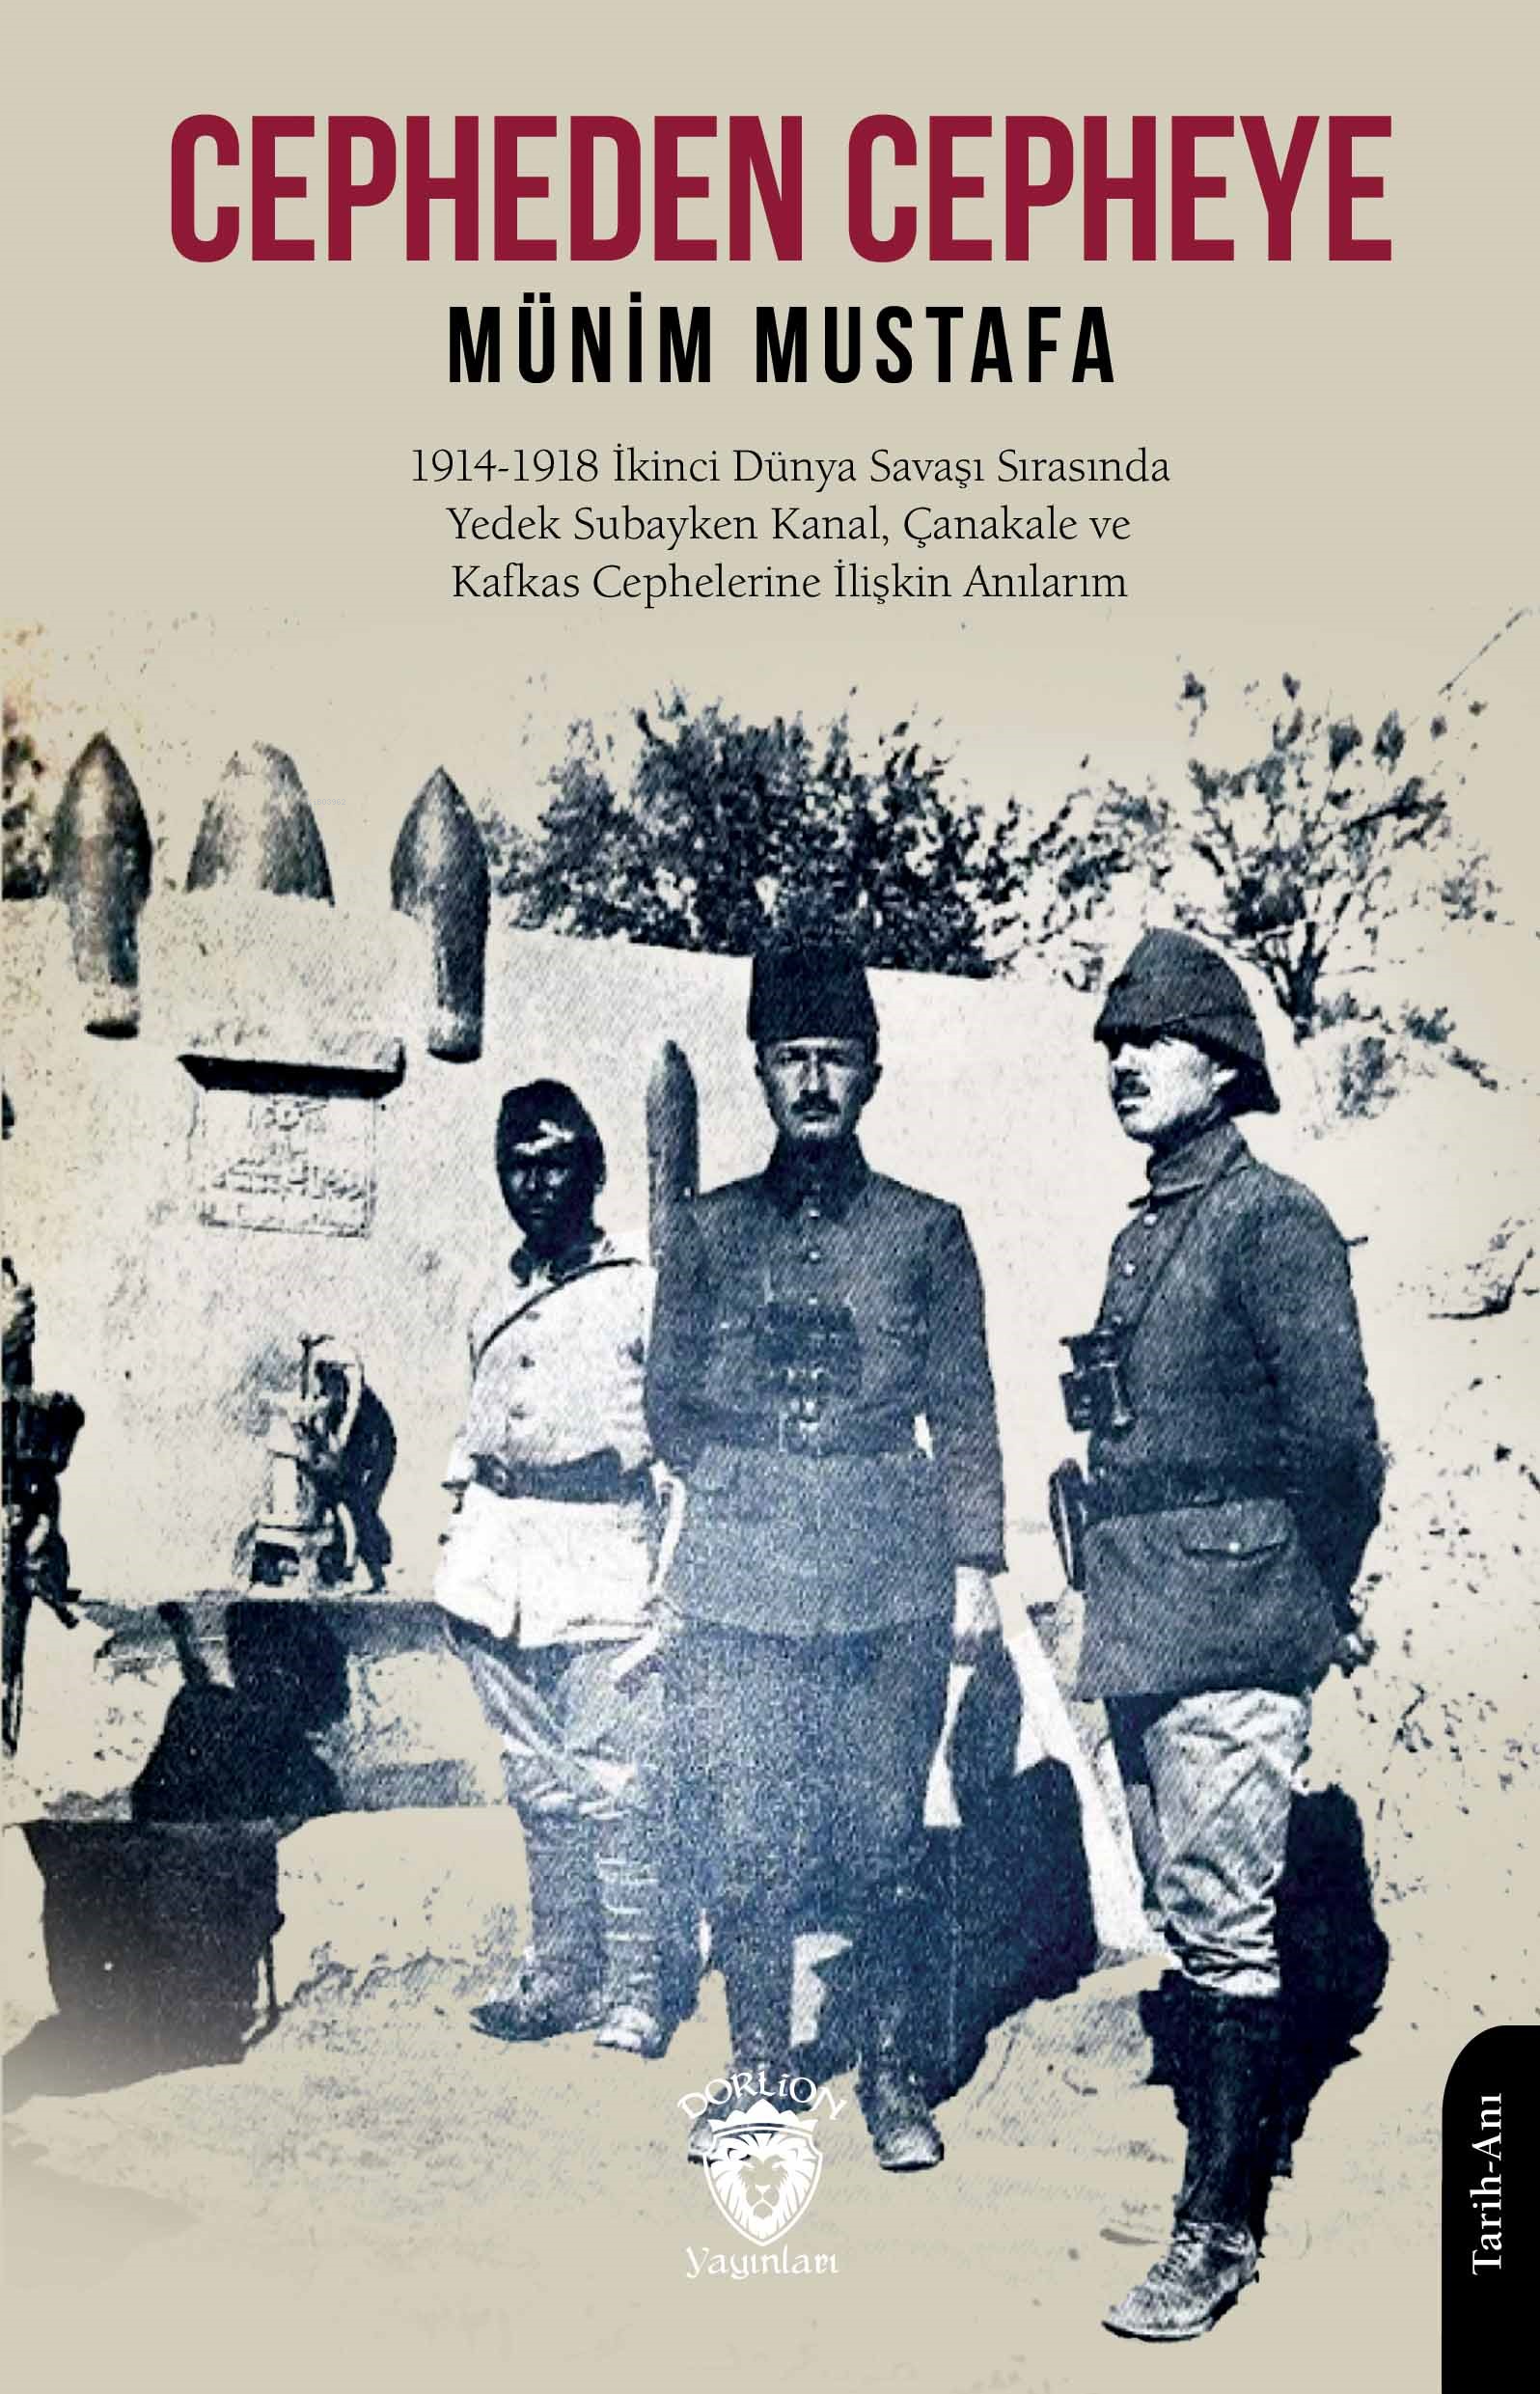 Cepheden Cepheye;1914 - 1918 İkinci Dünya Savaşı Sırasında Yedek Subayken Kanal, Çanakkale ve Kafkas Cephelerine İlişkin Anılarım